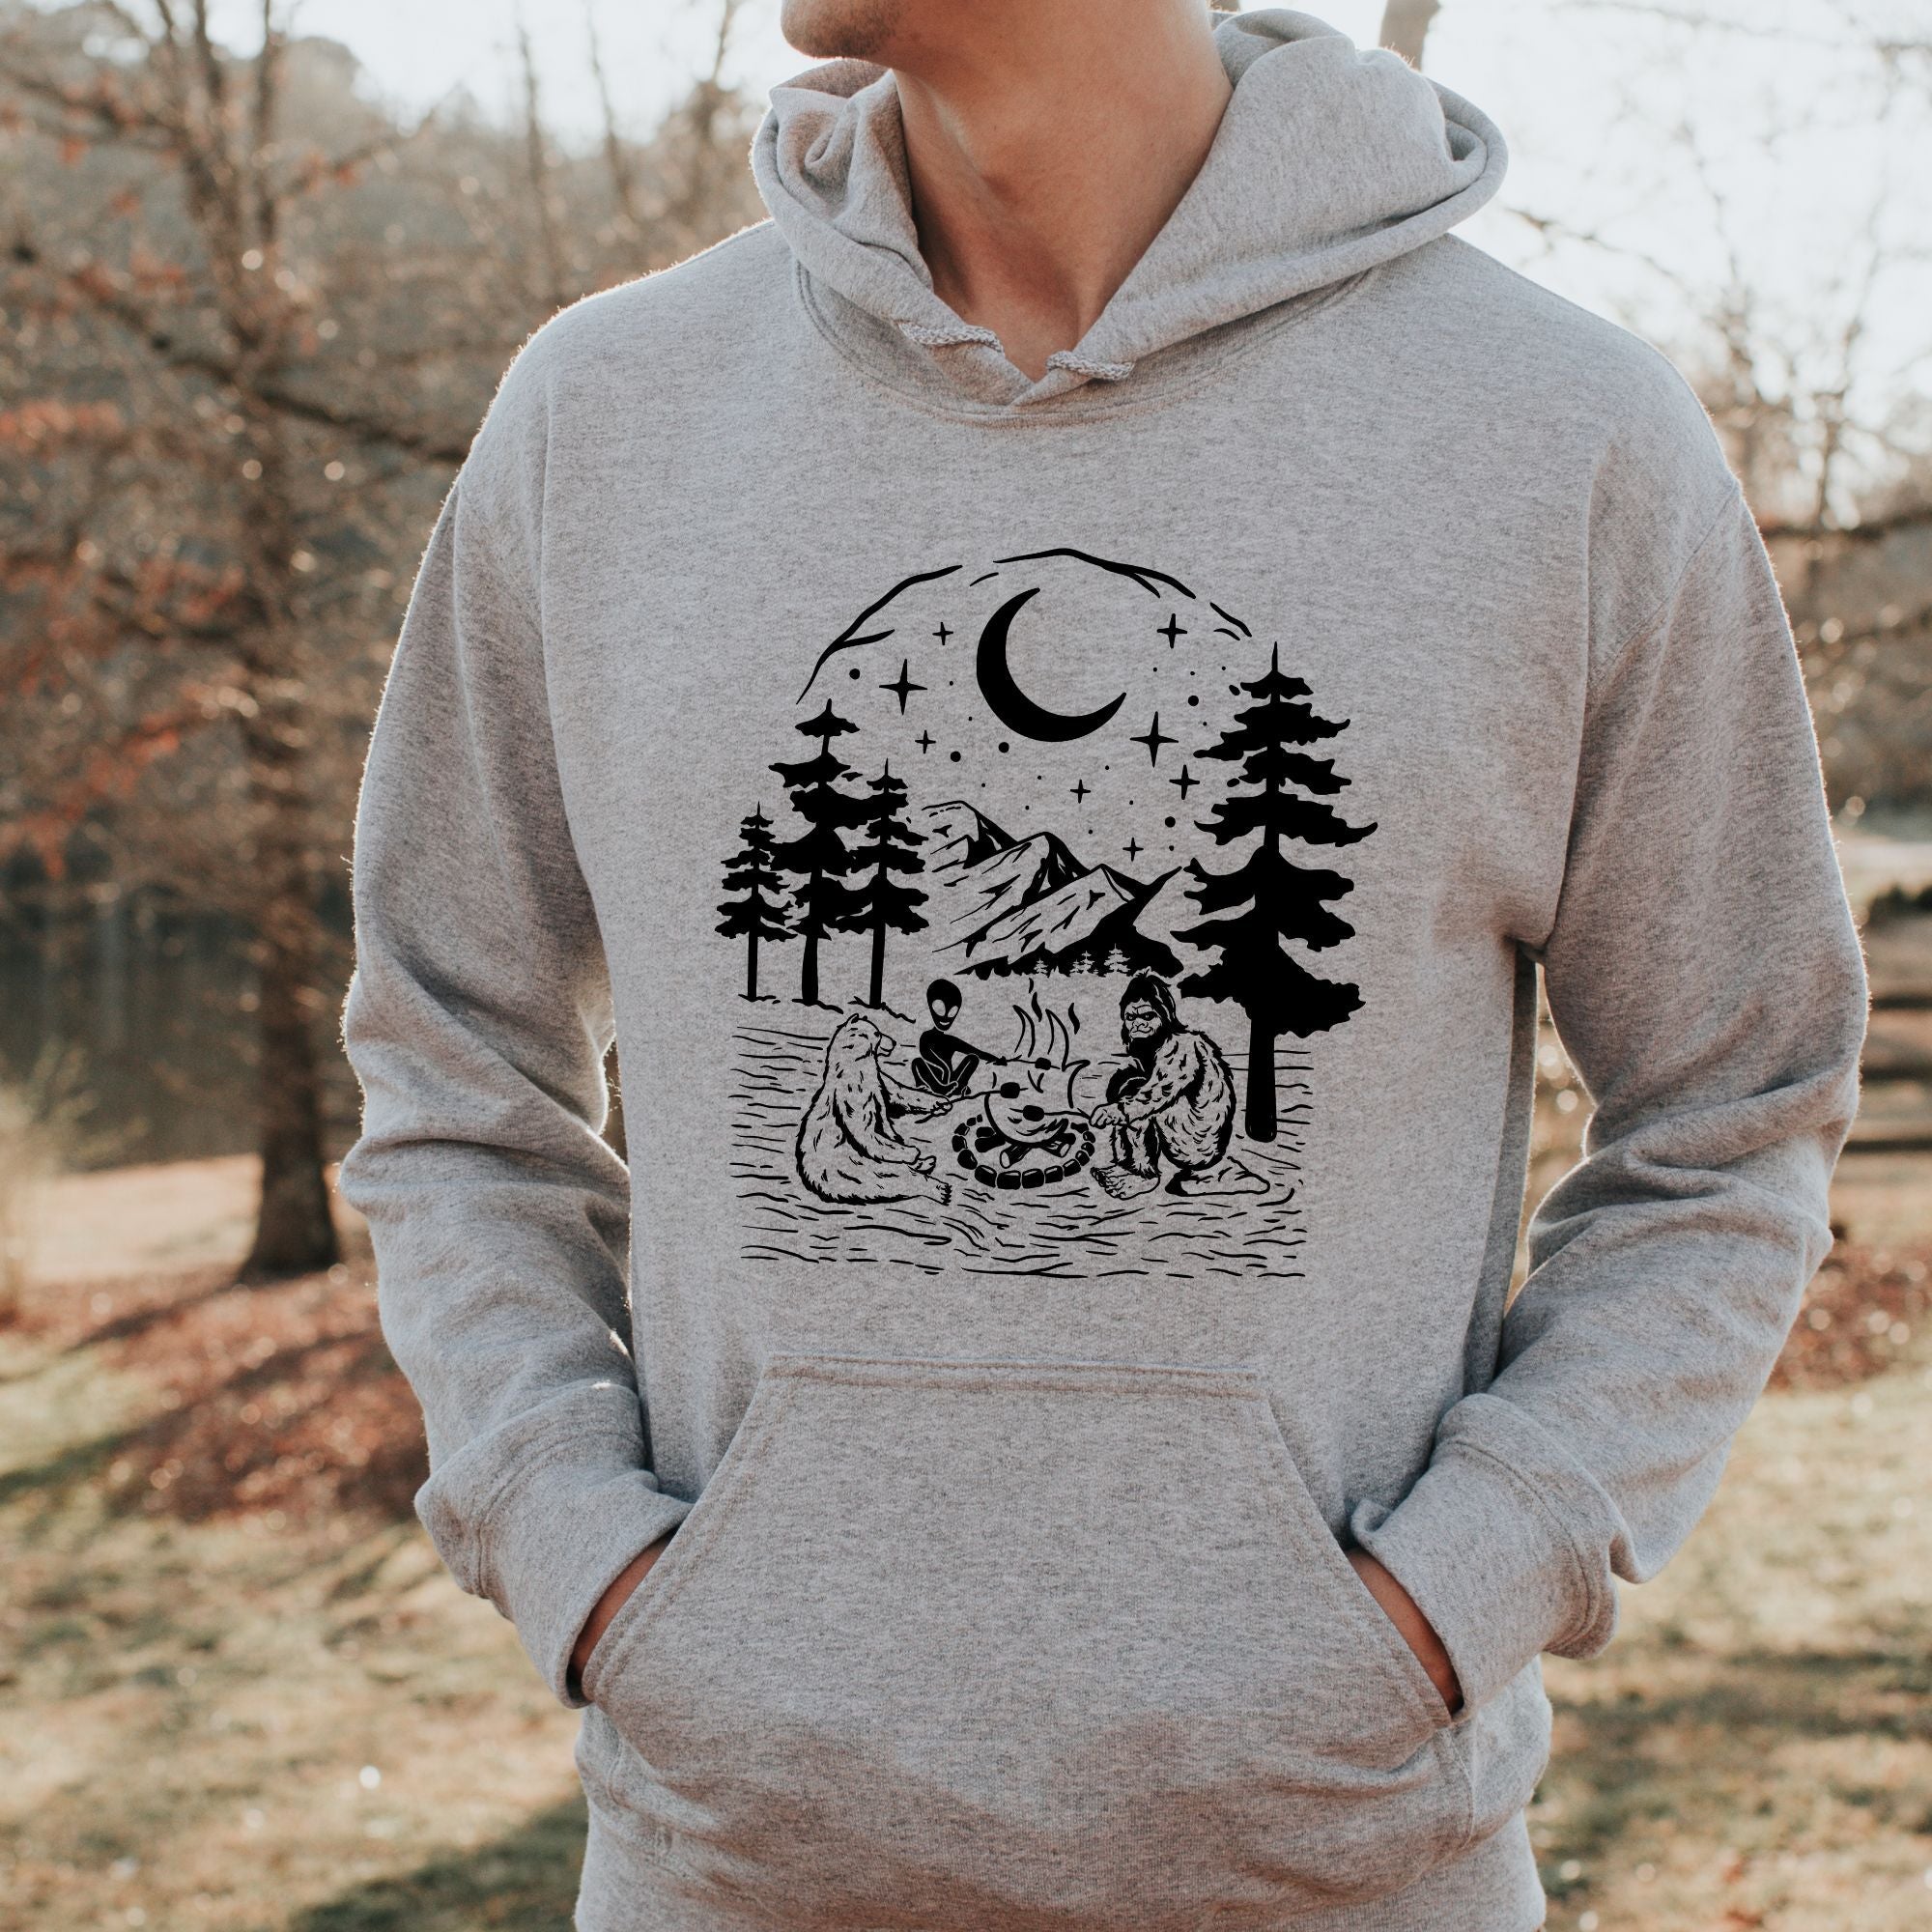 Bigfoot, Alien, Bear Camping Hoodie - Crewneck Sweatshirt for Skier *UNISEX FIT*-Sweatshirts-208 Tees Wholesale, Idaho